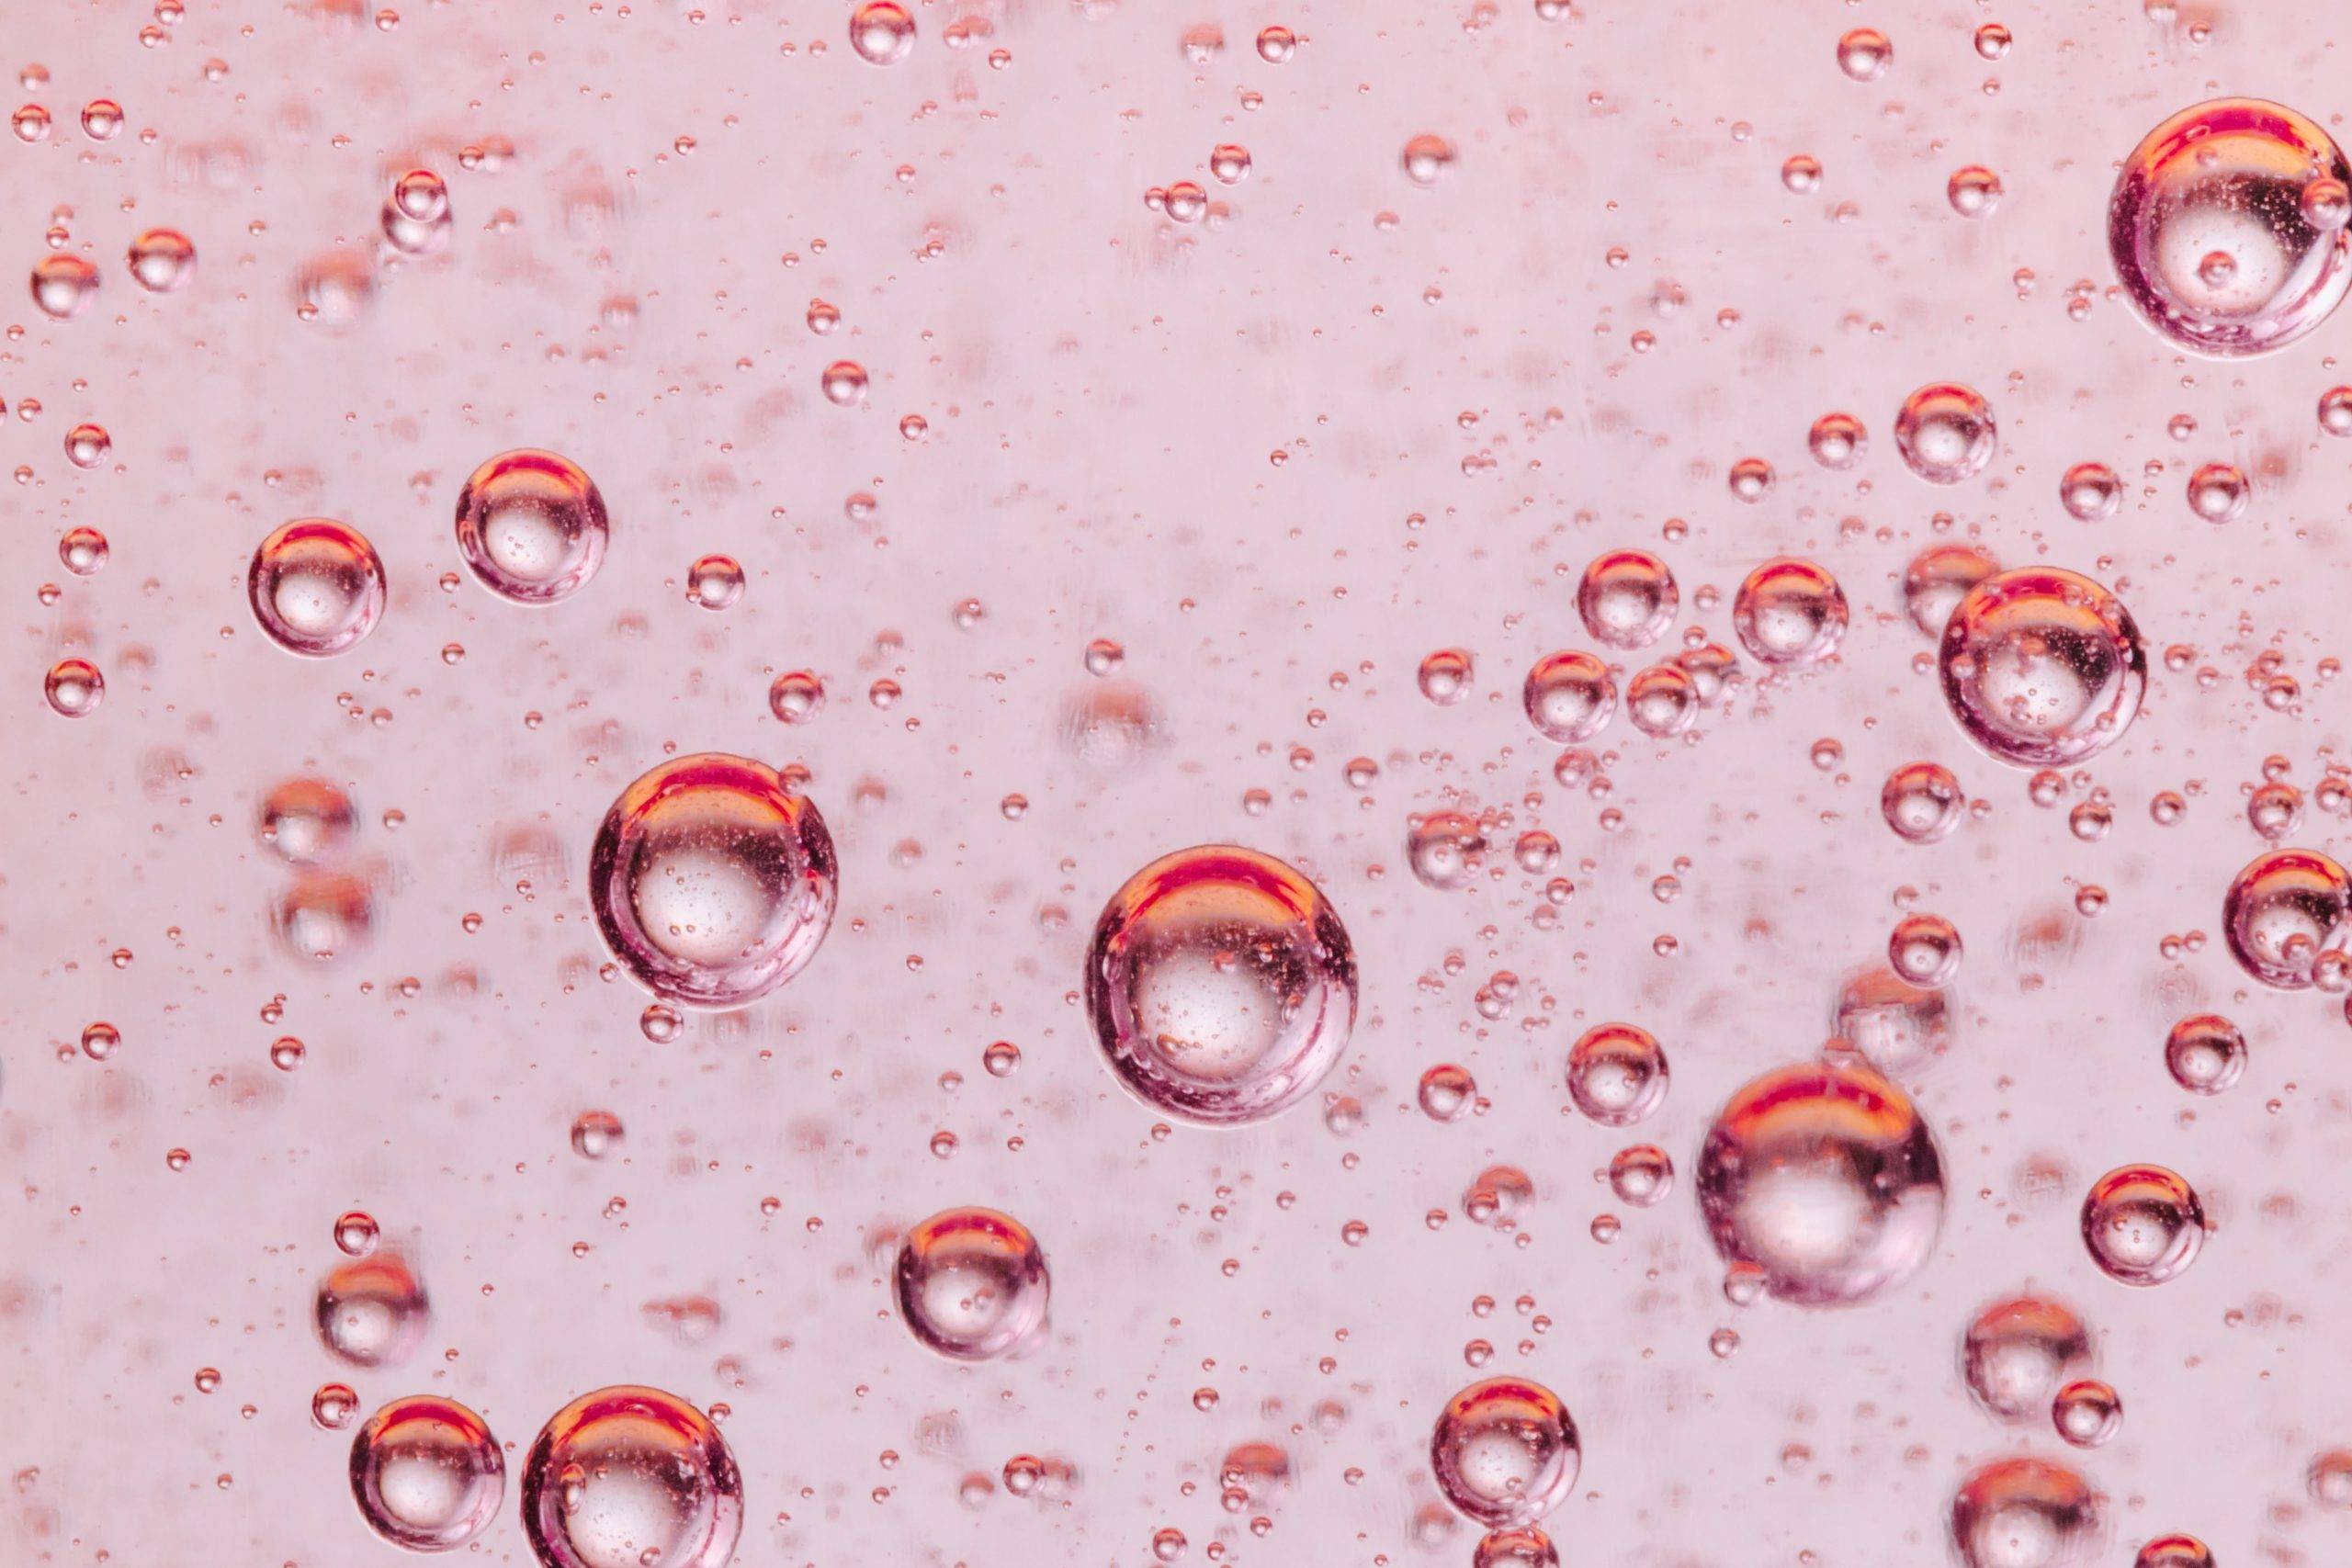 Prosecco rosé – given succé eller en bubbla på väg att spricka?